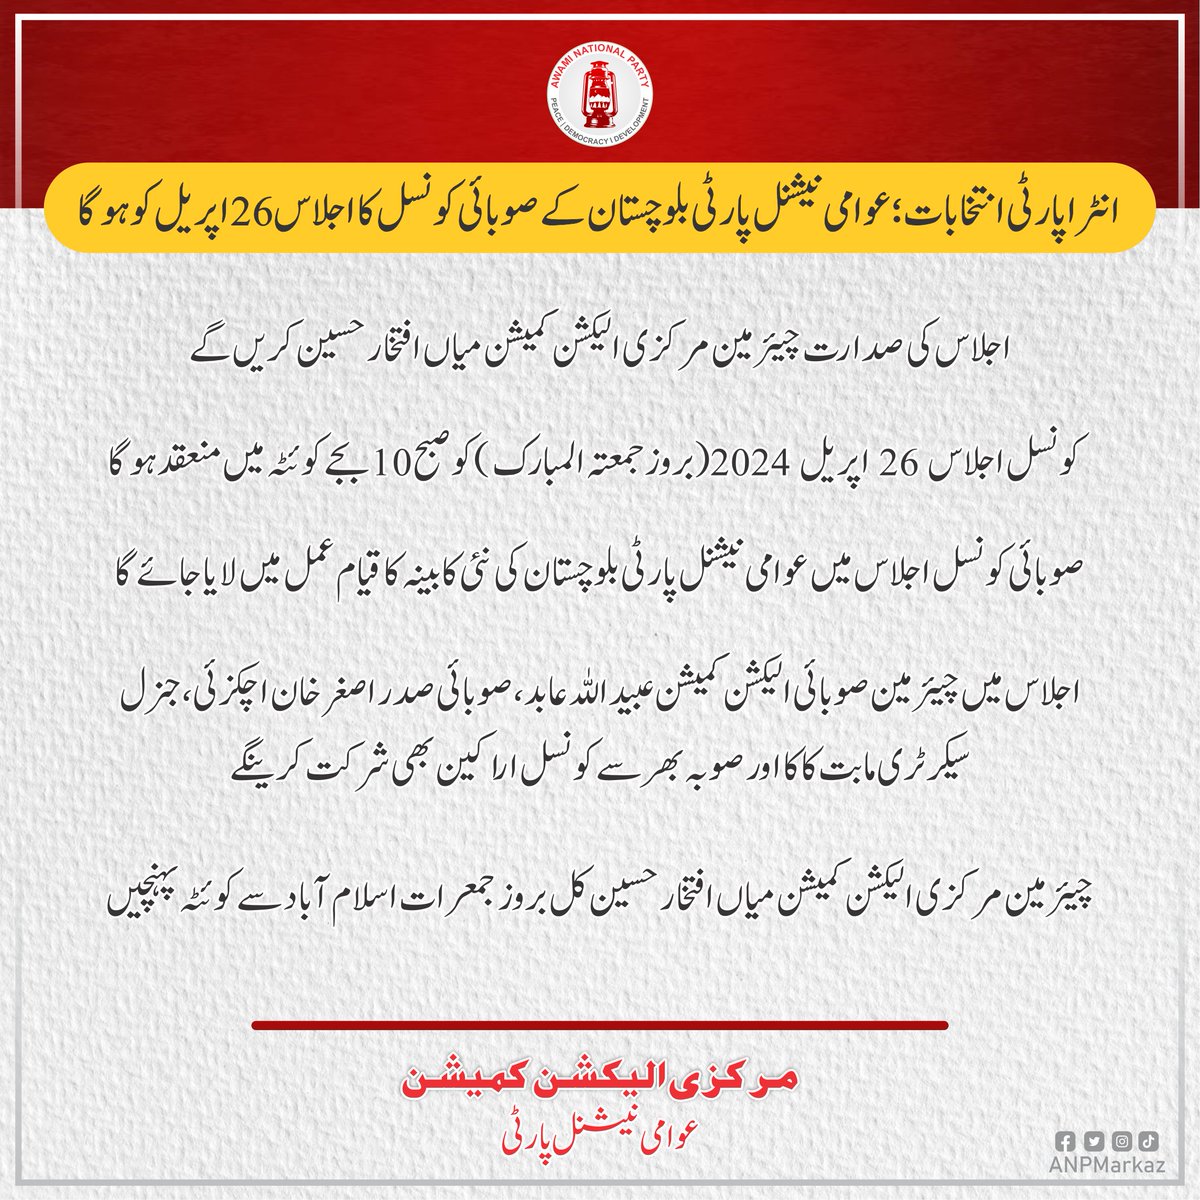 انٹرا پارٹی انتخابات؛ عوامی نیشنل پارٹی بلوچستان کے صوبائی کونسل کا اجلاس 26 اپریل کو ہوگا اجلاس کی صدارت چیئرمین مرکزی الیکشن کمیشن میاں افتخار حسین کریں گے کونسل اجلاس 26 اپریل 2024 (بروز جمعتہ المبارک) کو صبح 10 بجے کوئٹہ میں منعقد ہوگا صوبائی کونسل اجلاس میں عوامی نیشنل پارٹی…